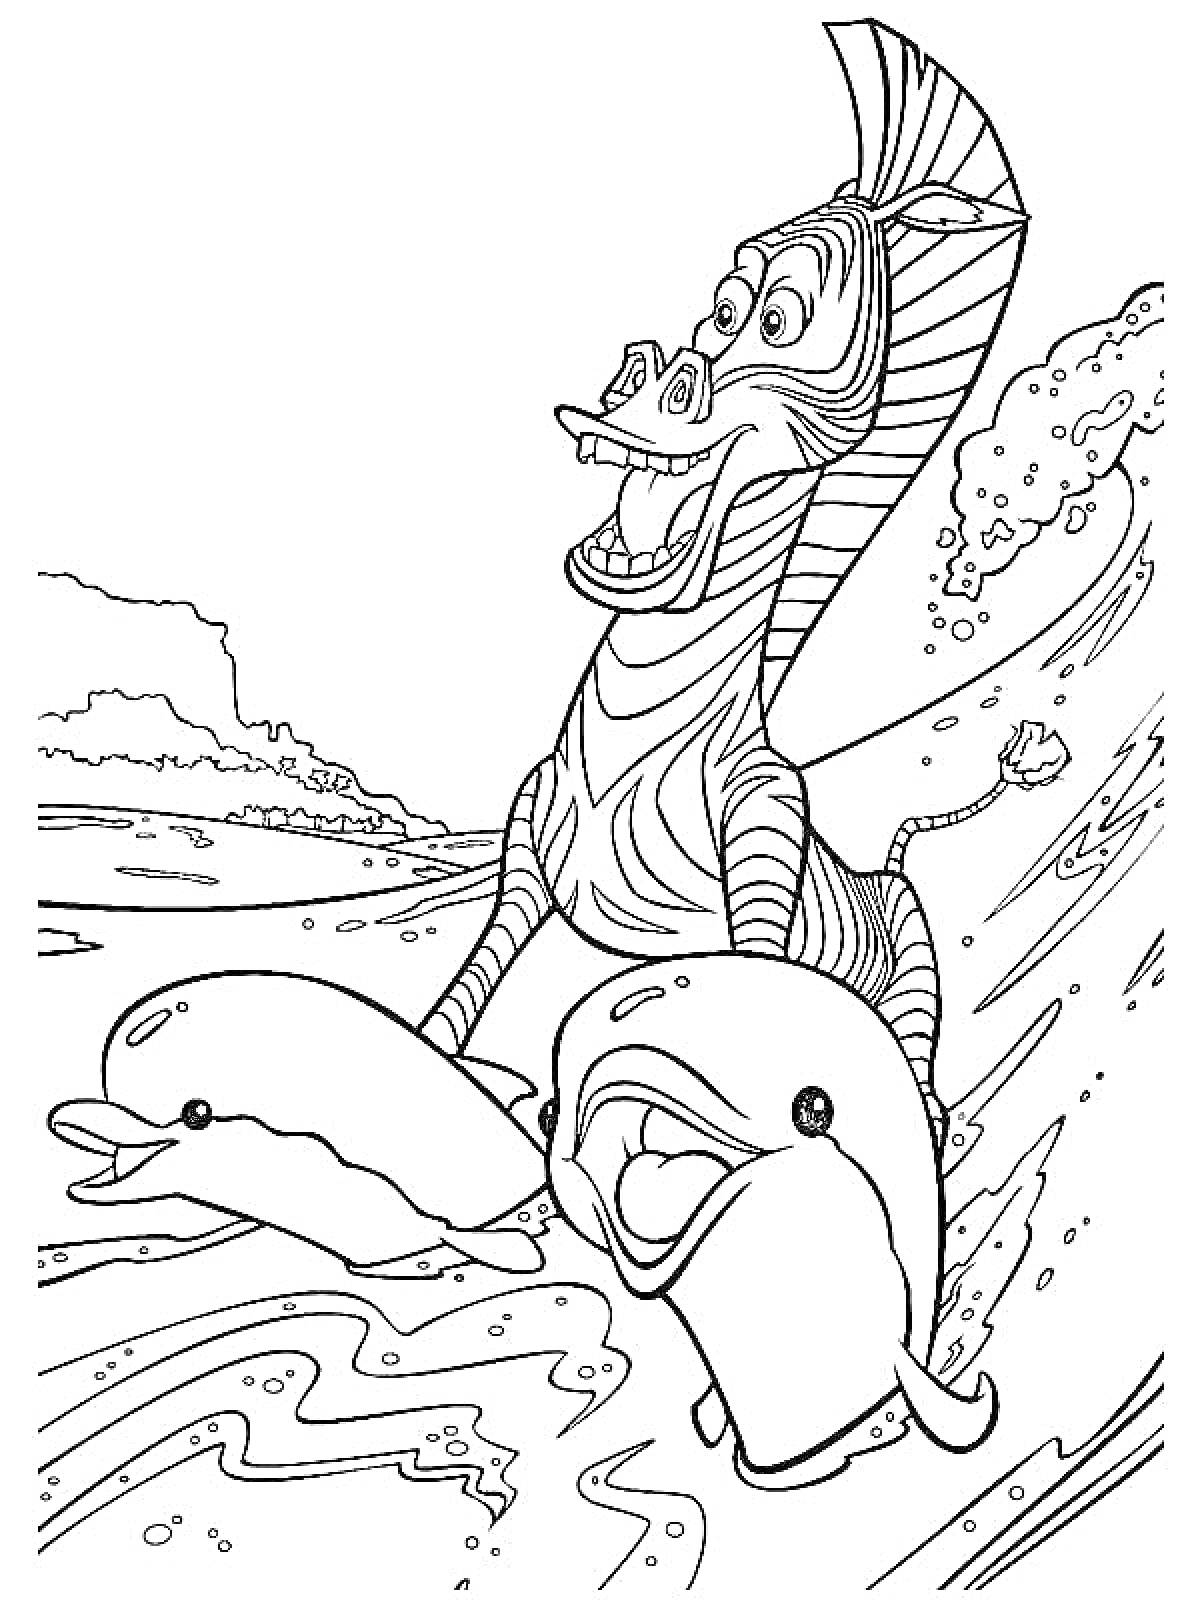 Раскраска Зебра с дельфинами на волне